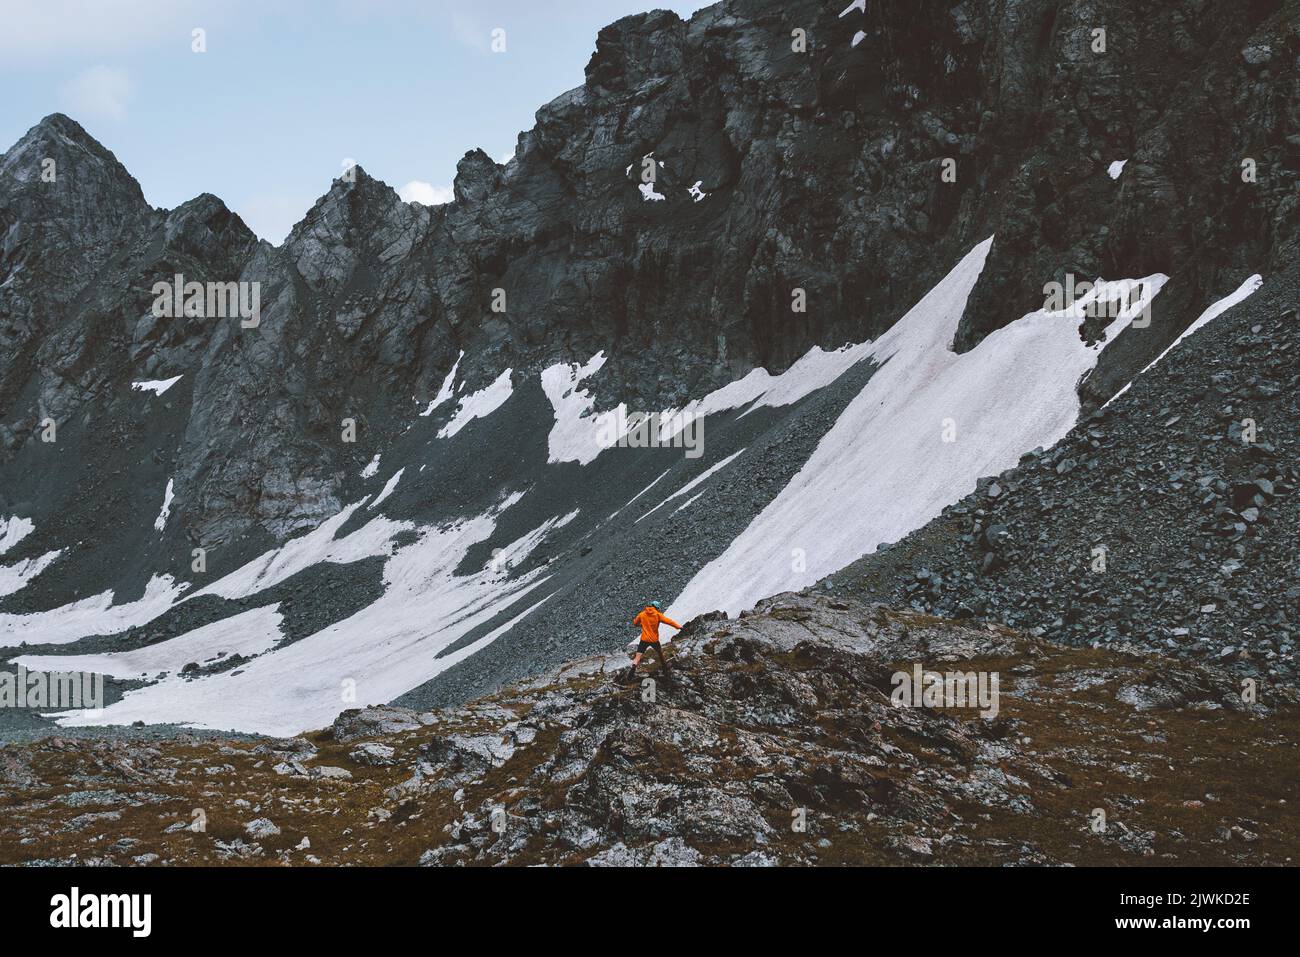 Reise Abenteuer Outdoor Mann Cross Country Laufen in felsigen Bergen Wandern Aktivurlaub Motivation gesundes Lifestyle-Konzept Stockfoto